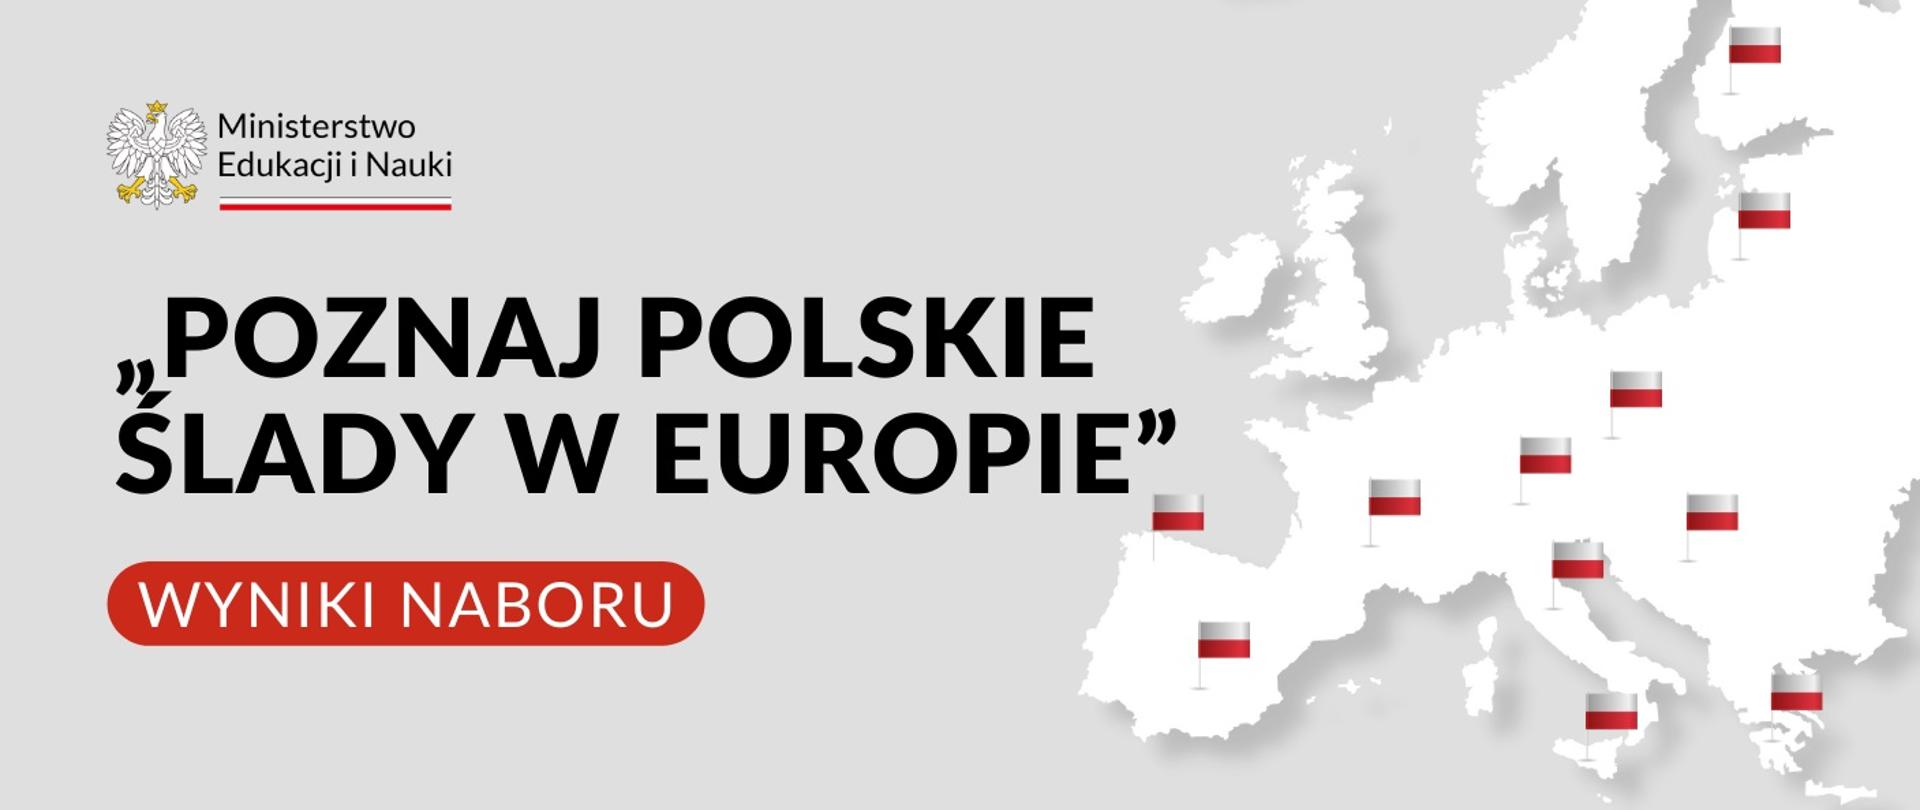 Grafika - szara schematyczna mapa Europy i napis Poznaj polskie ślady w Europie - wyniki naboru.